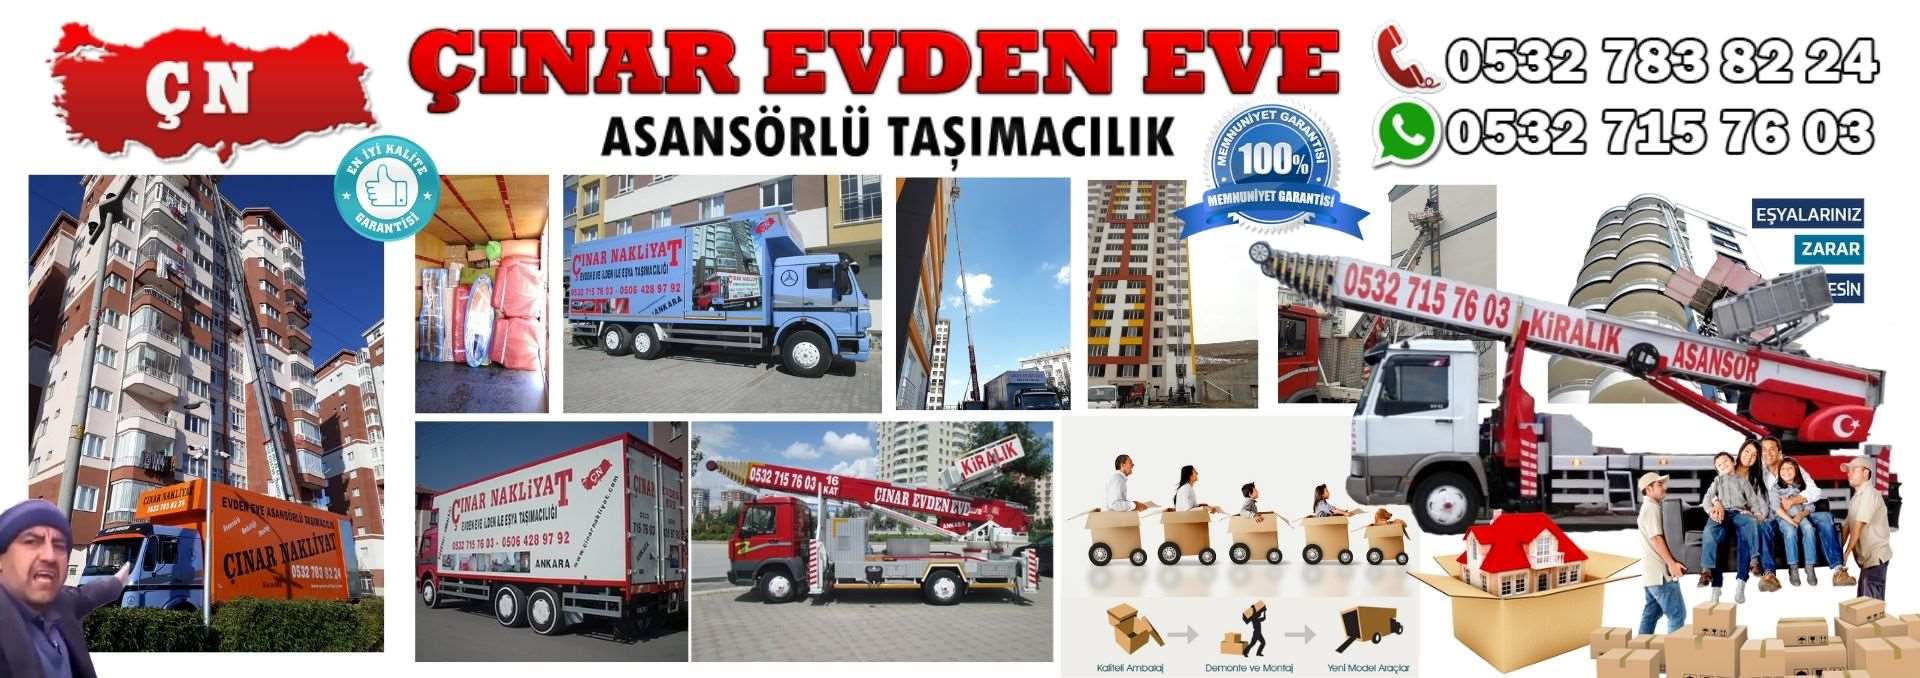 Ankara Sincan Evden Eve Asansörlü Ev Eşyası Taşıma 0532 715 76 03